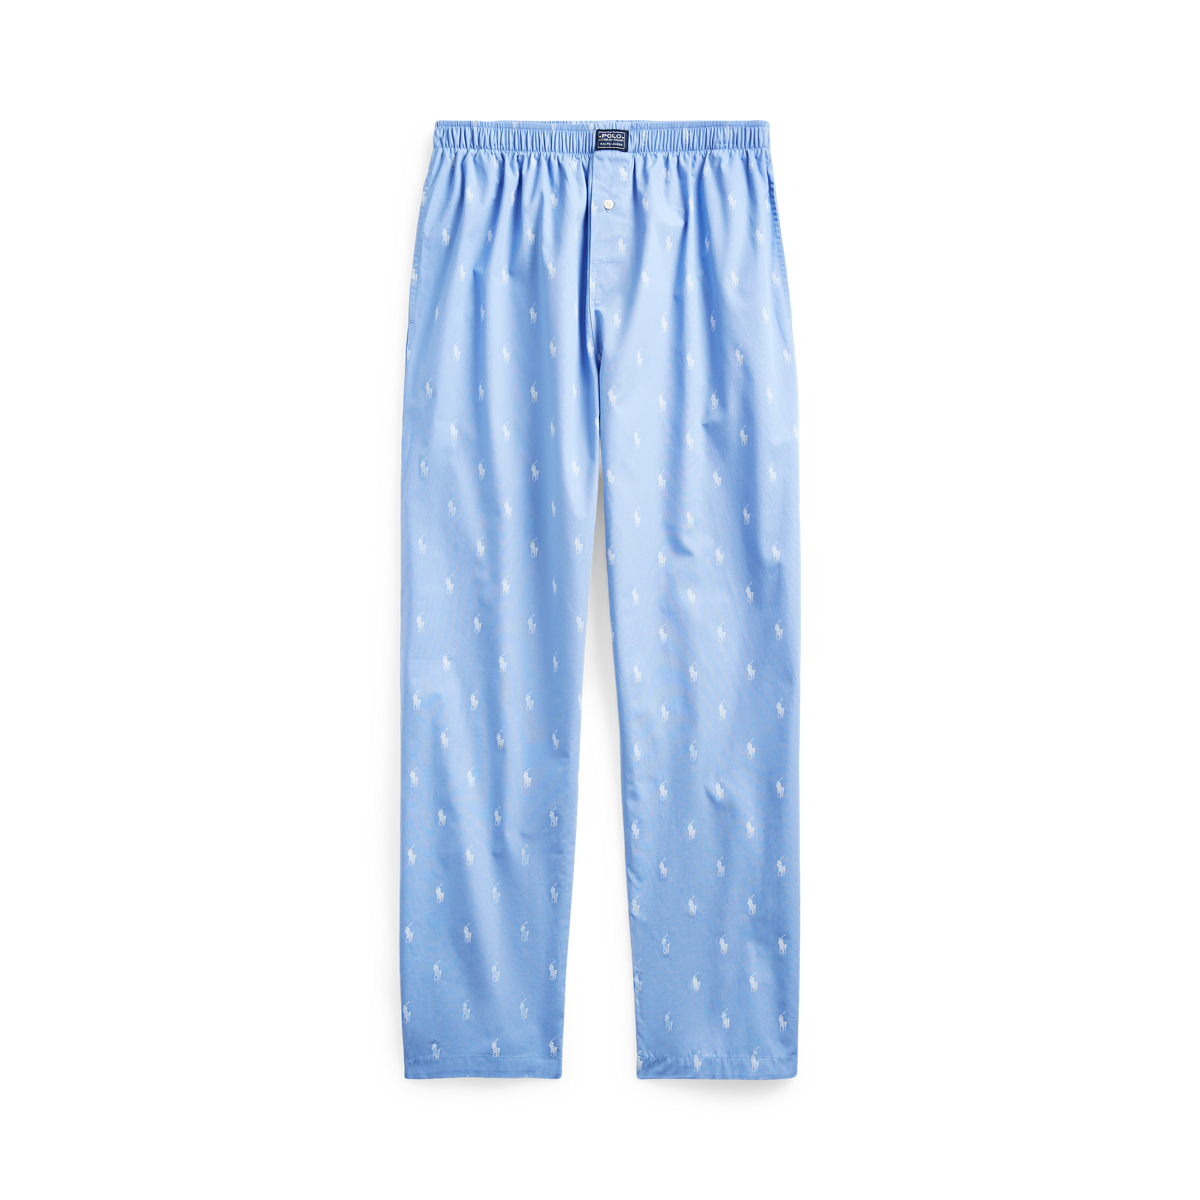 Polo Ralph Lauren Big & Tall Allover Pony Pajama Sleep Pants